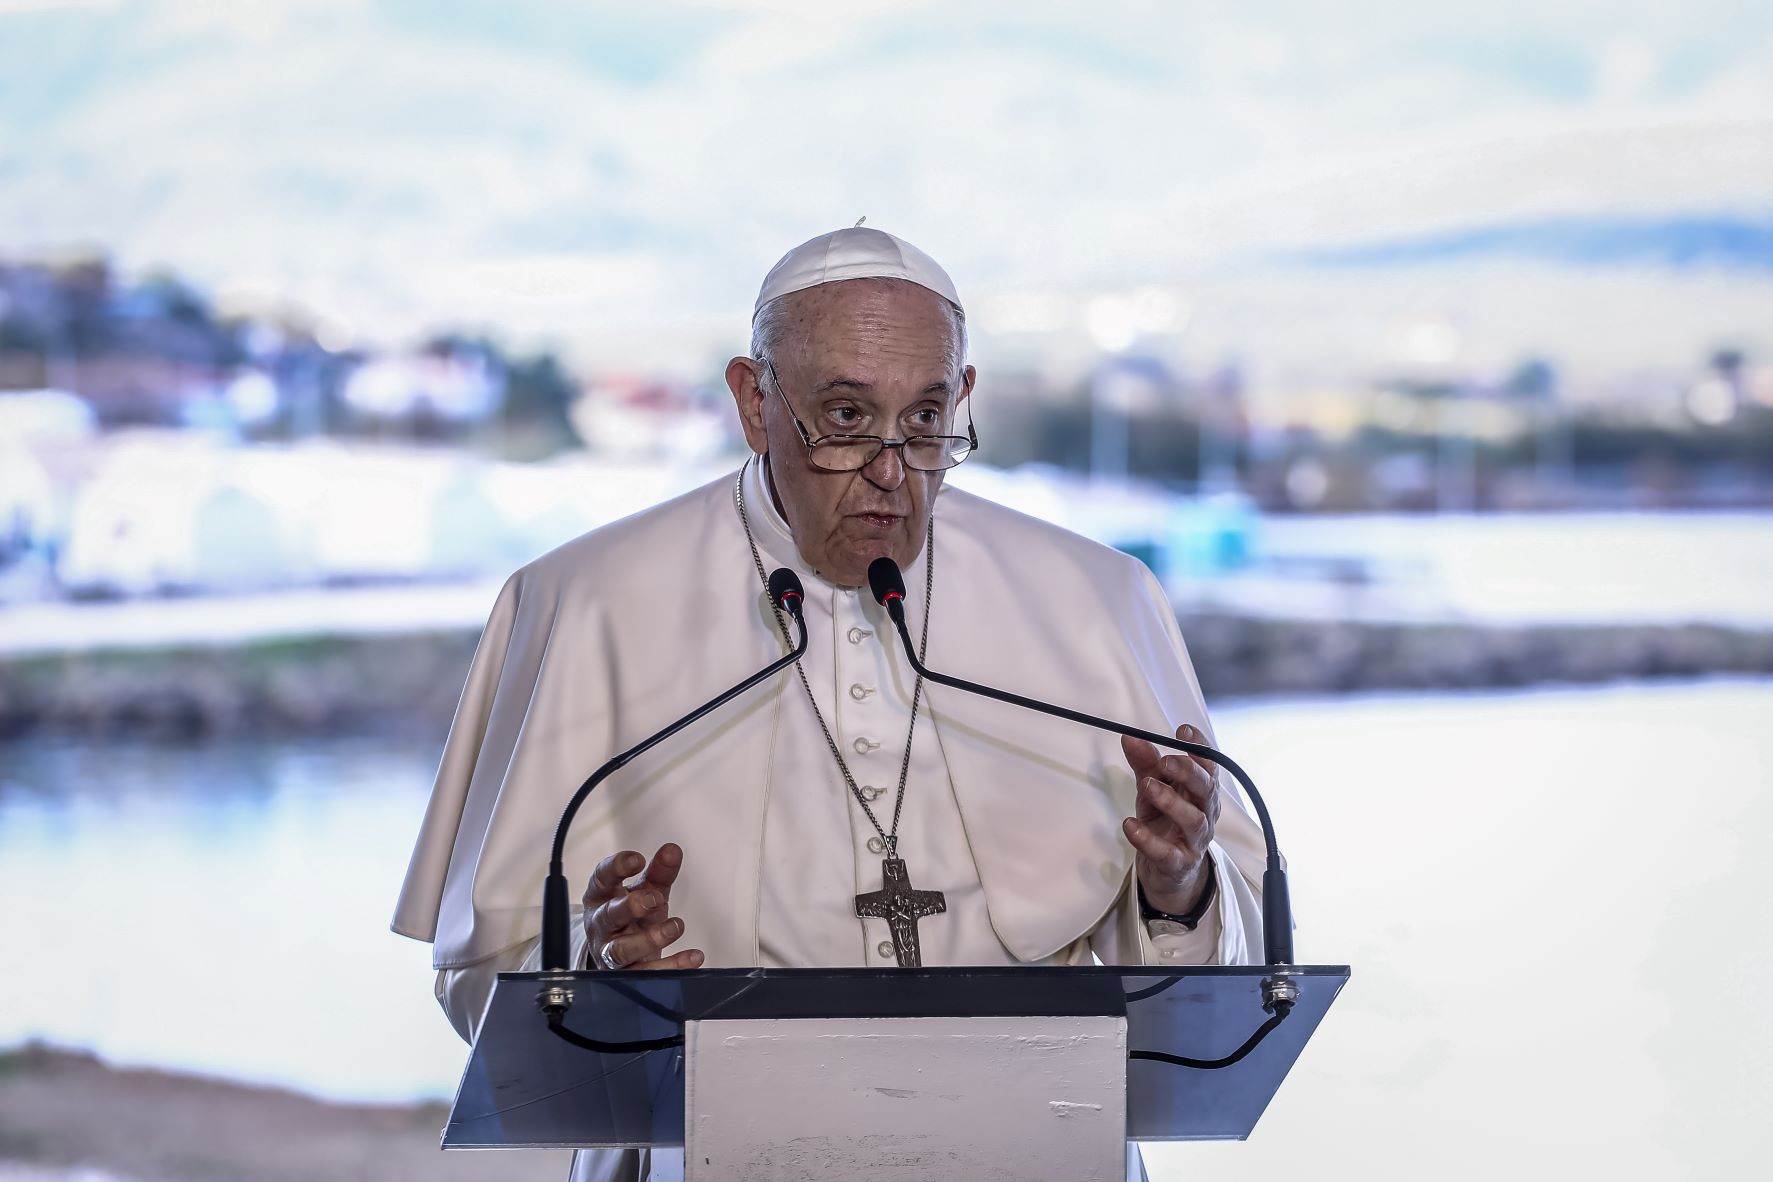 Ισχυρό μήνυμα του Πάπα Φραγκίσκου από τον προσφυγικό καταυλισμό στη Λέσβο: Με τους φτωχούς ενάντια στα τείχη